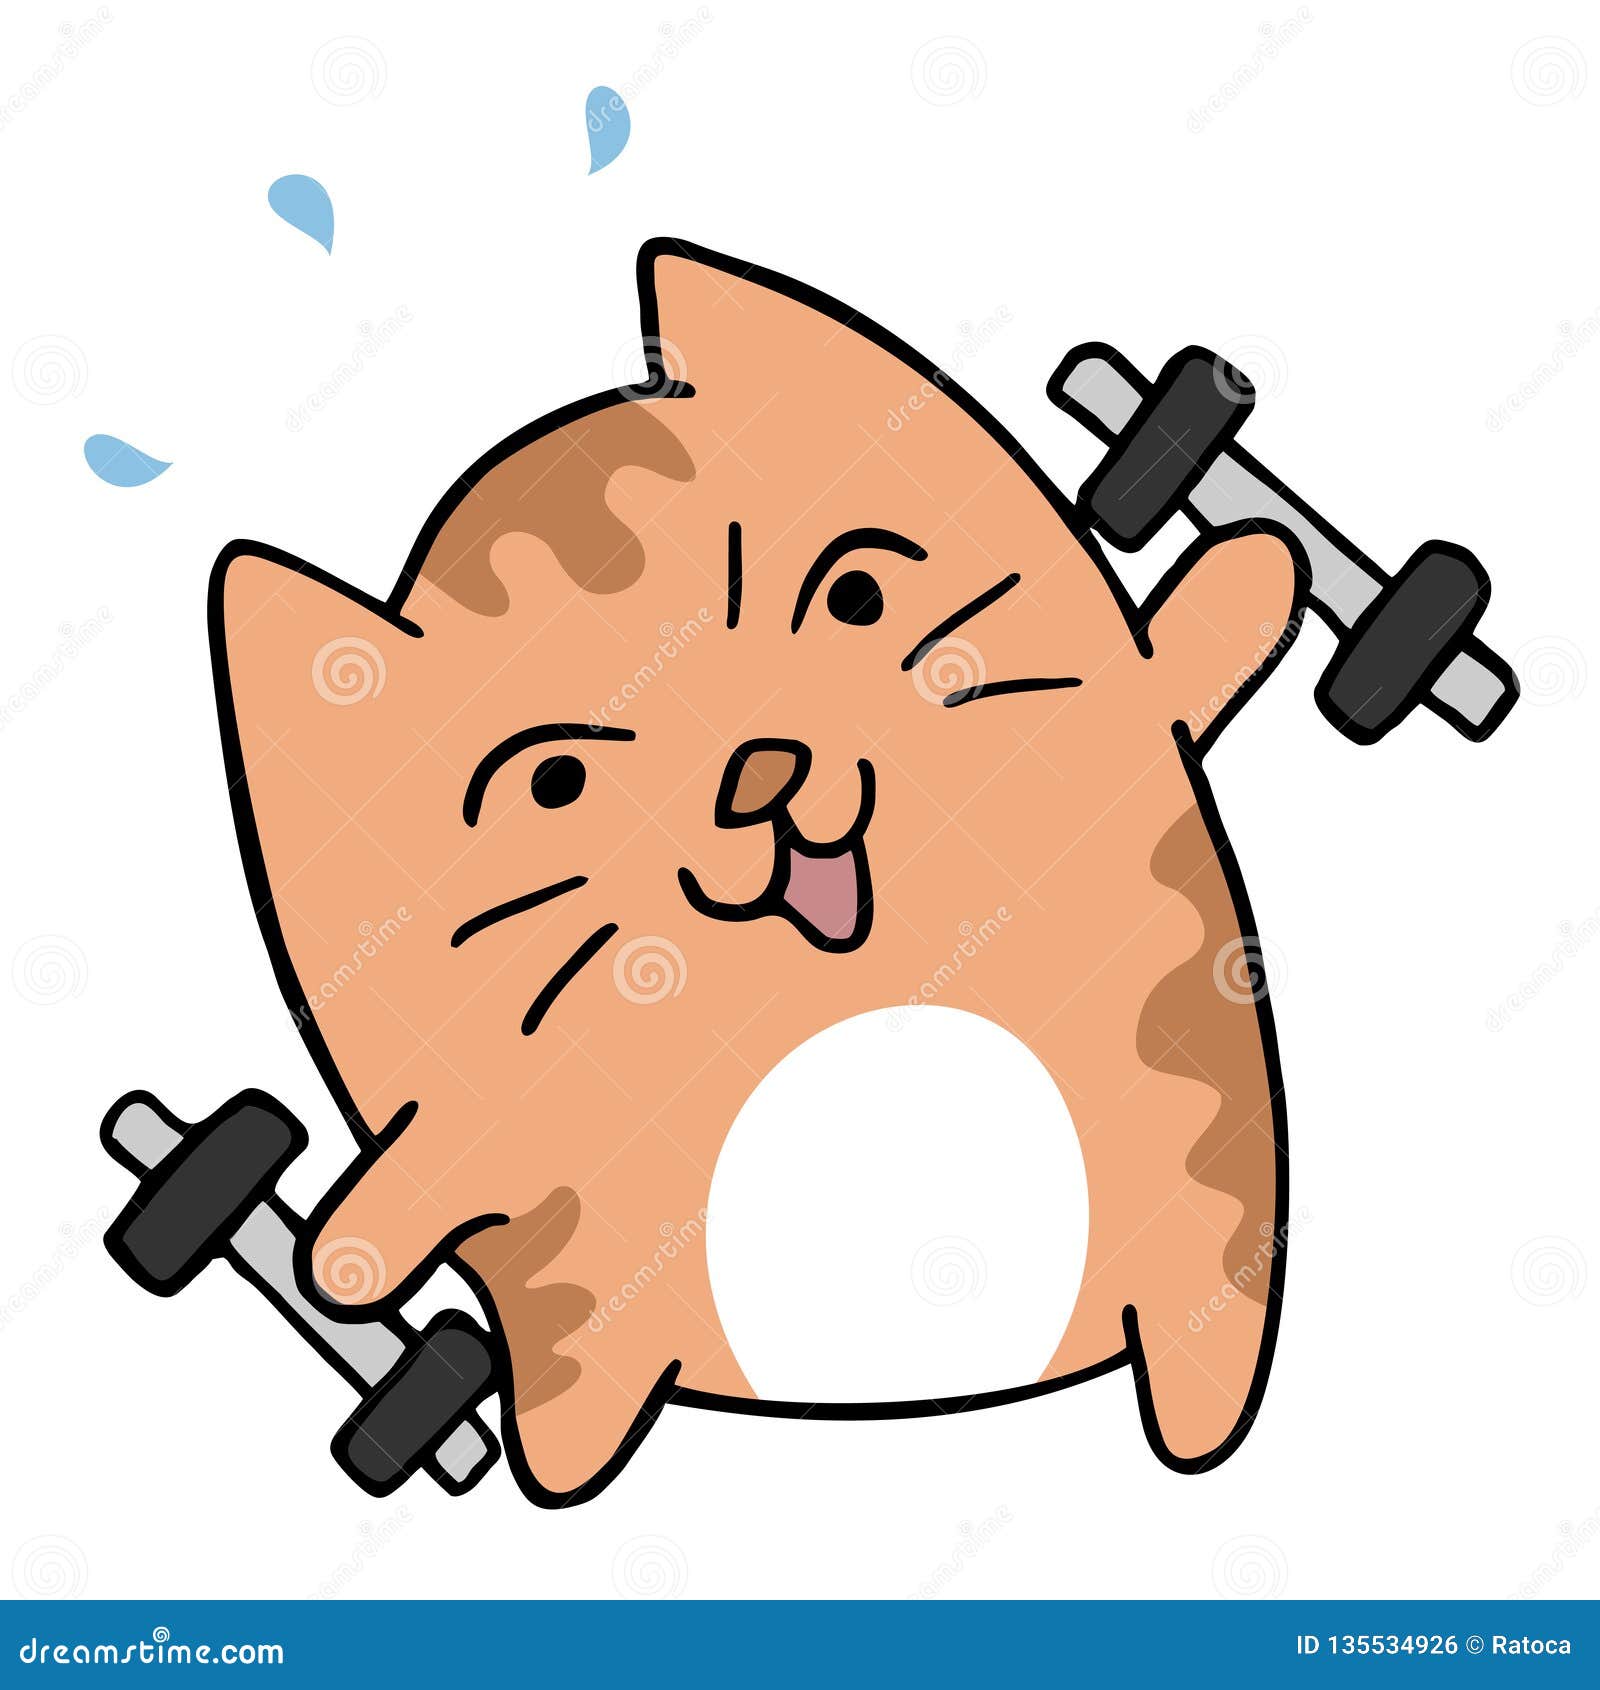 Funny cat training stock vector. Illustration of cartoon - 135534926